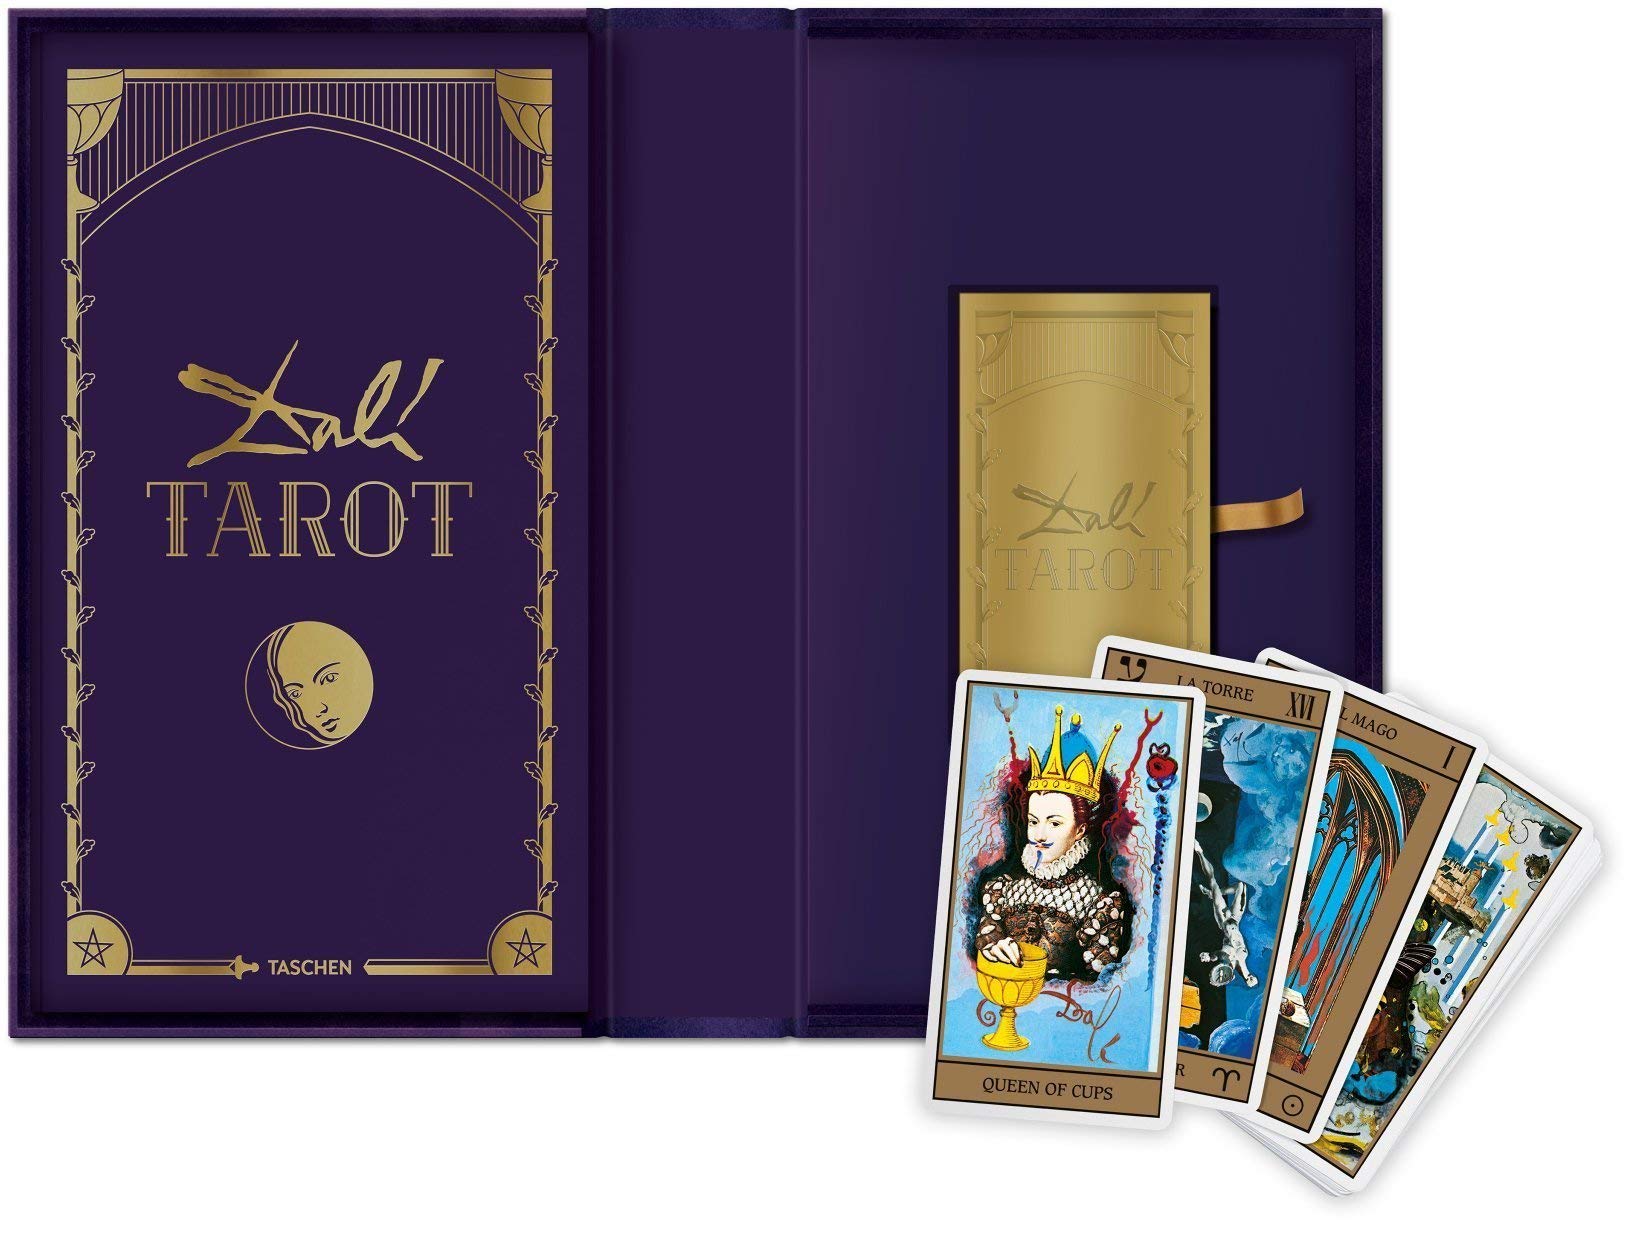 Dalí. Tarot - Das Werk erschien 1984 in einer limitierten, mittlerweile längst vergriffenen Art Edition